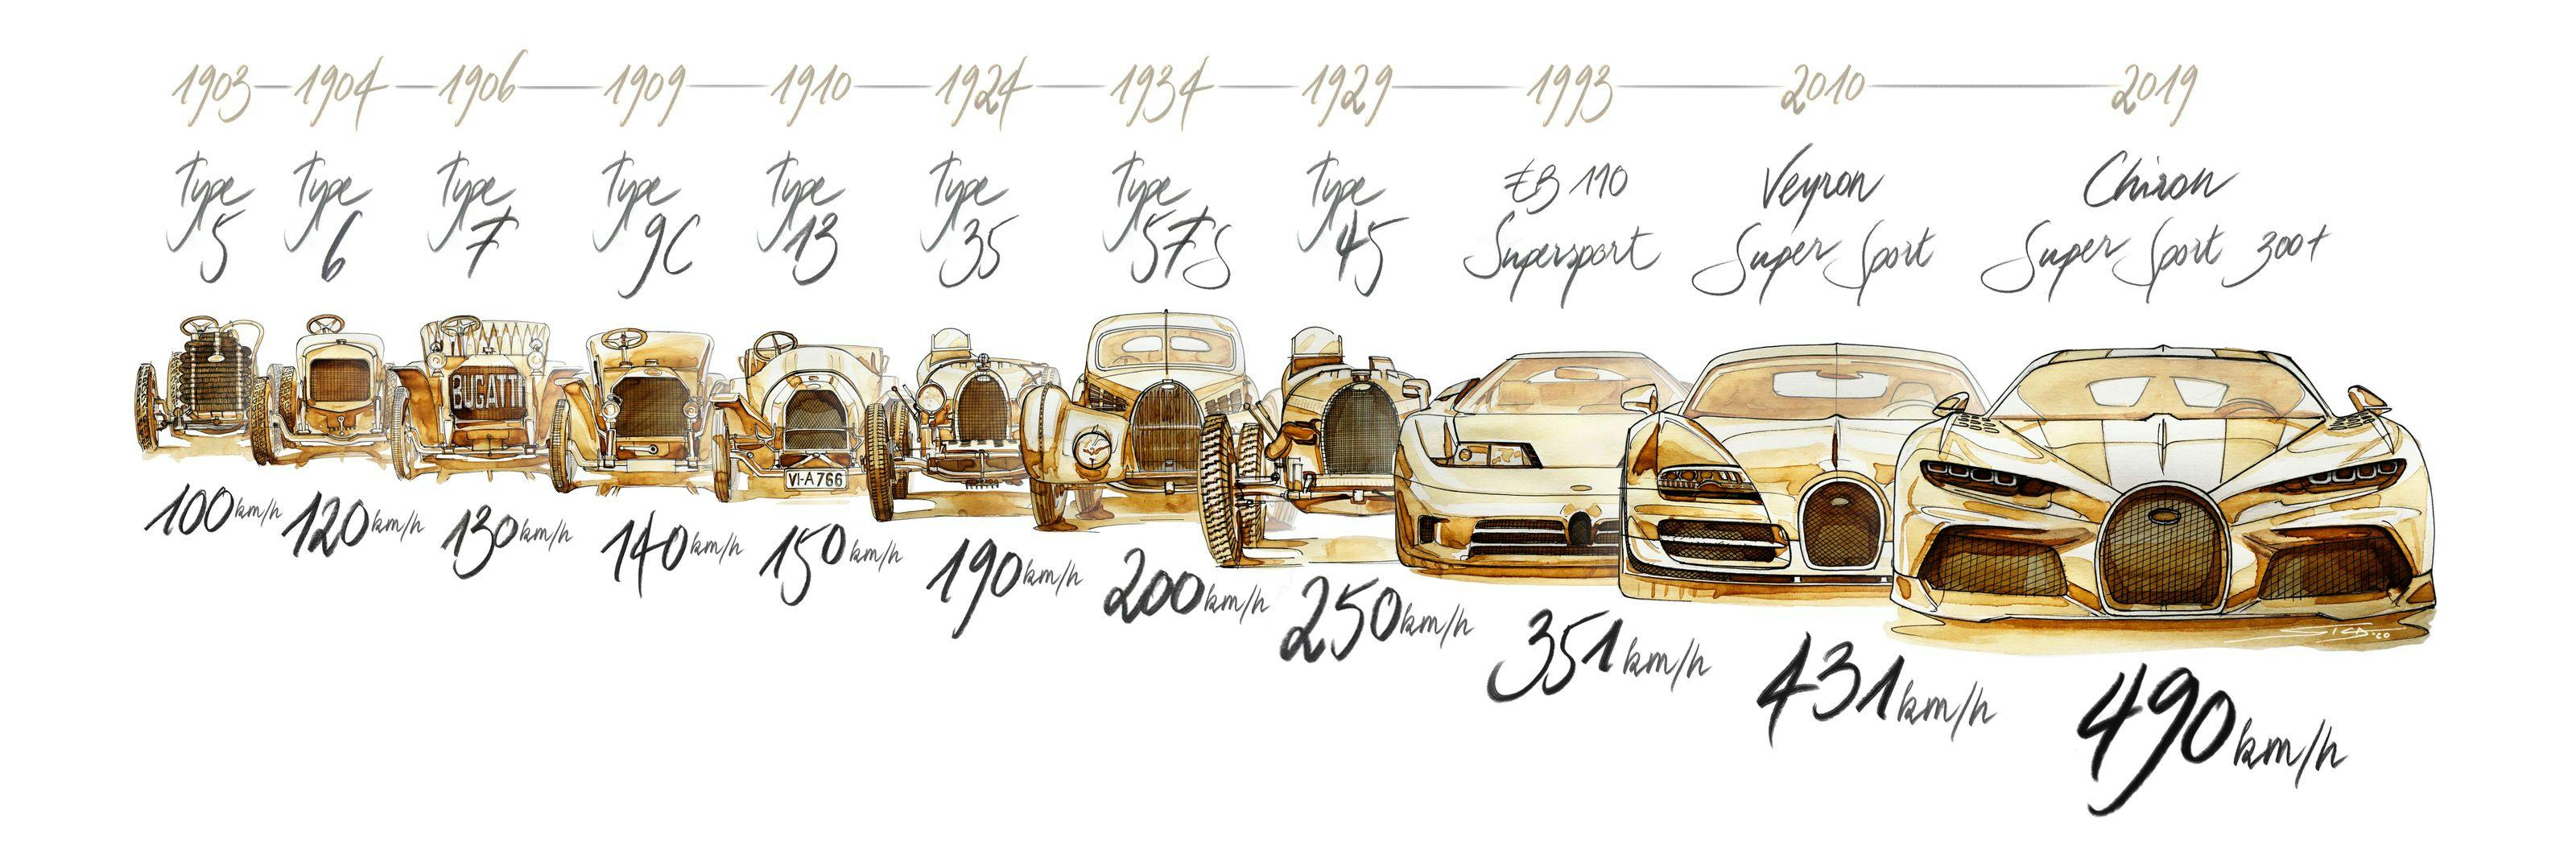 Bugatti Speedline – une marque aux nombreux records